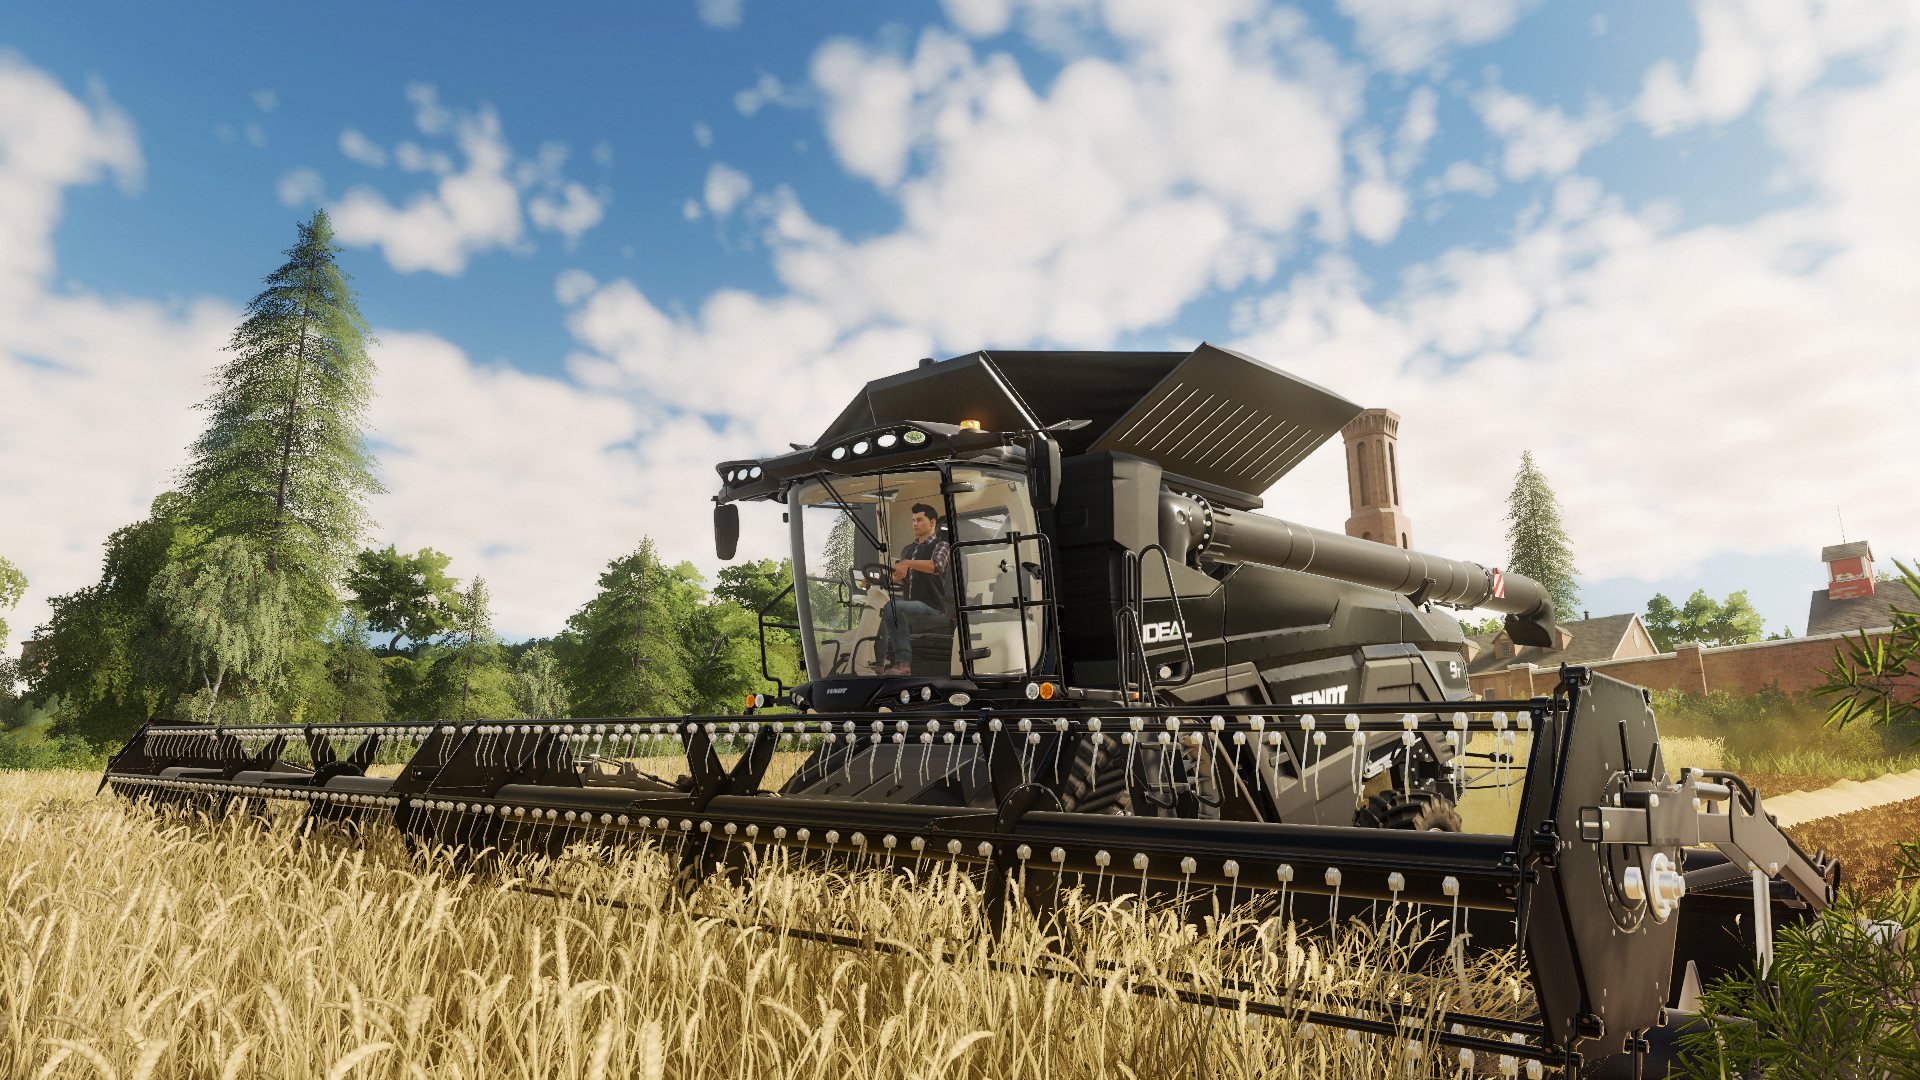 Farming Simulator 19 Platinum Edition EU Steam Altergift